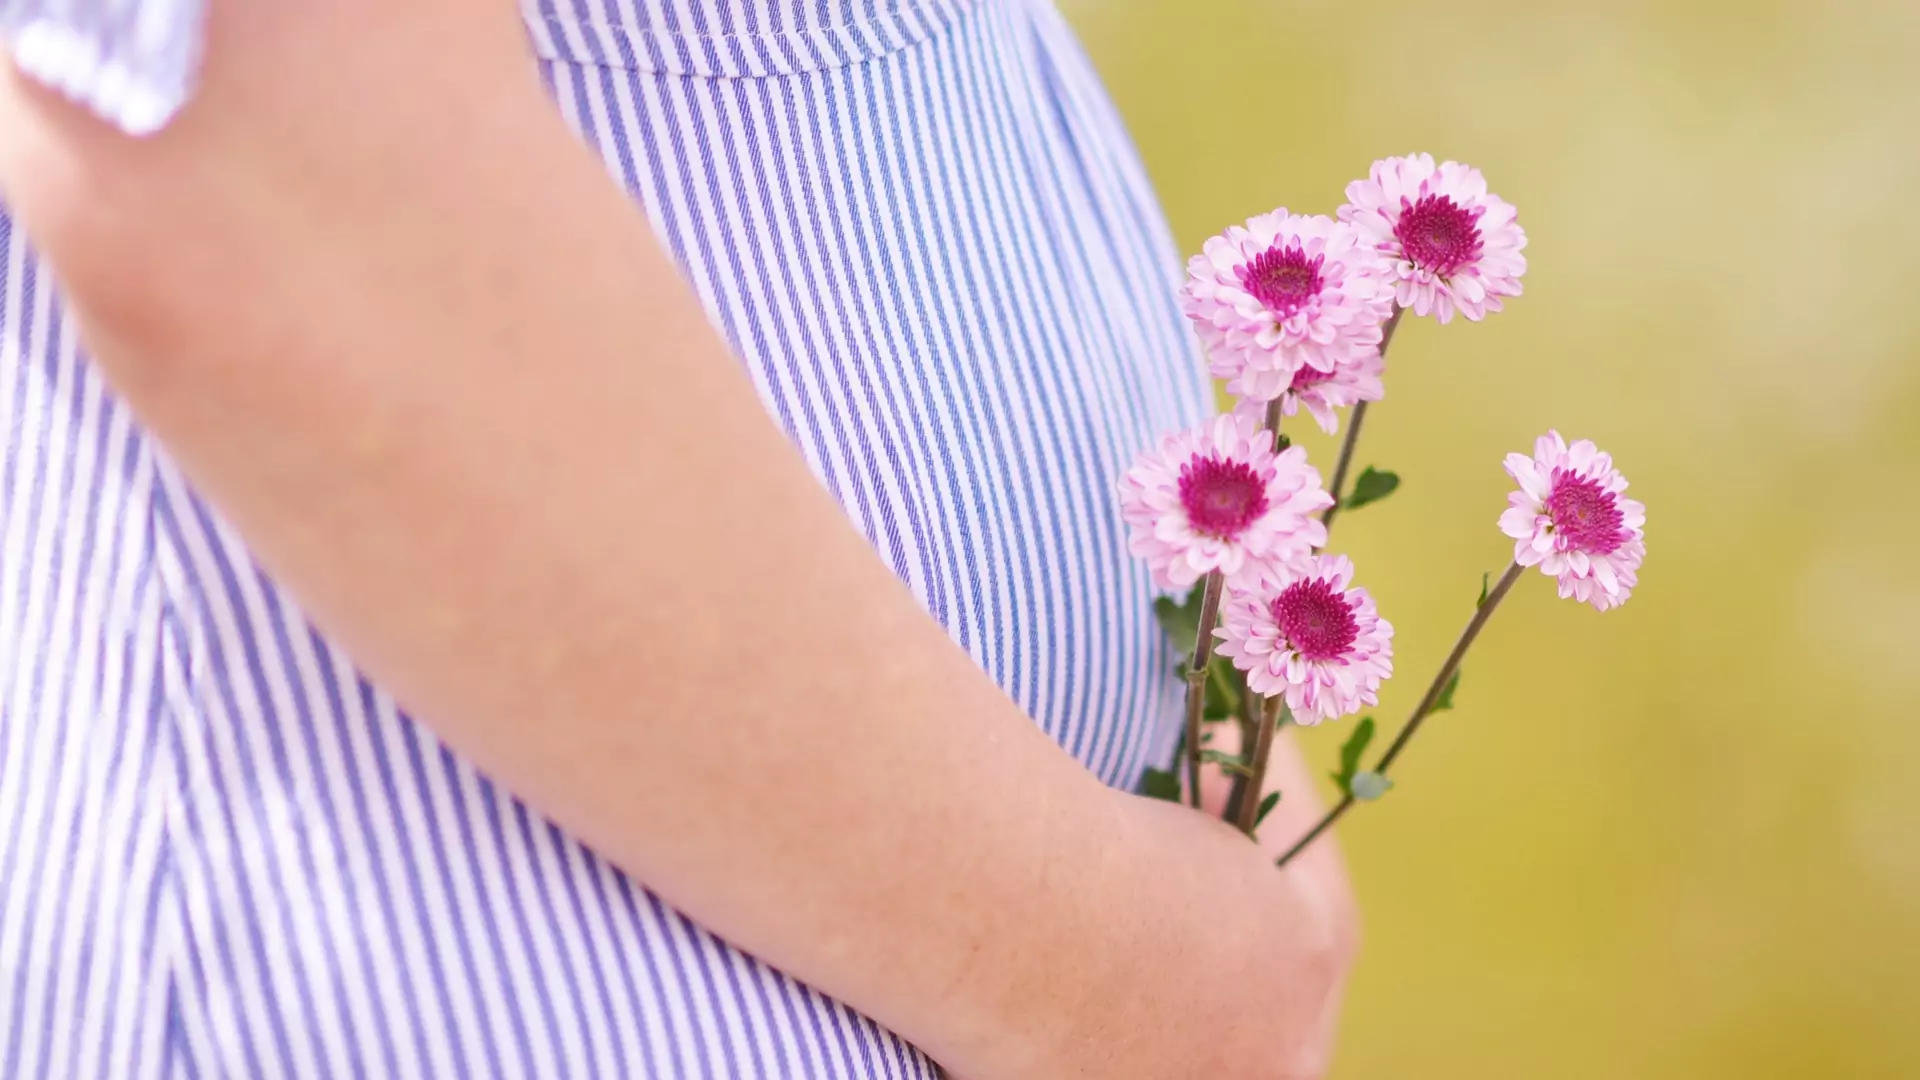 Domowe sposoby na biegunkę w ciąży - co brać?